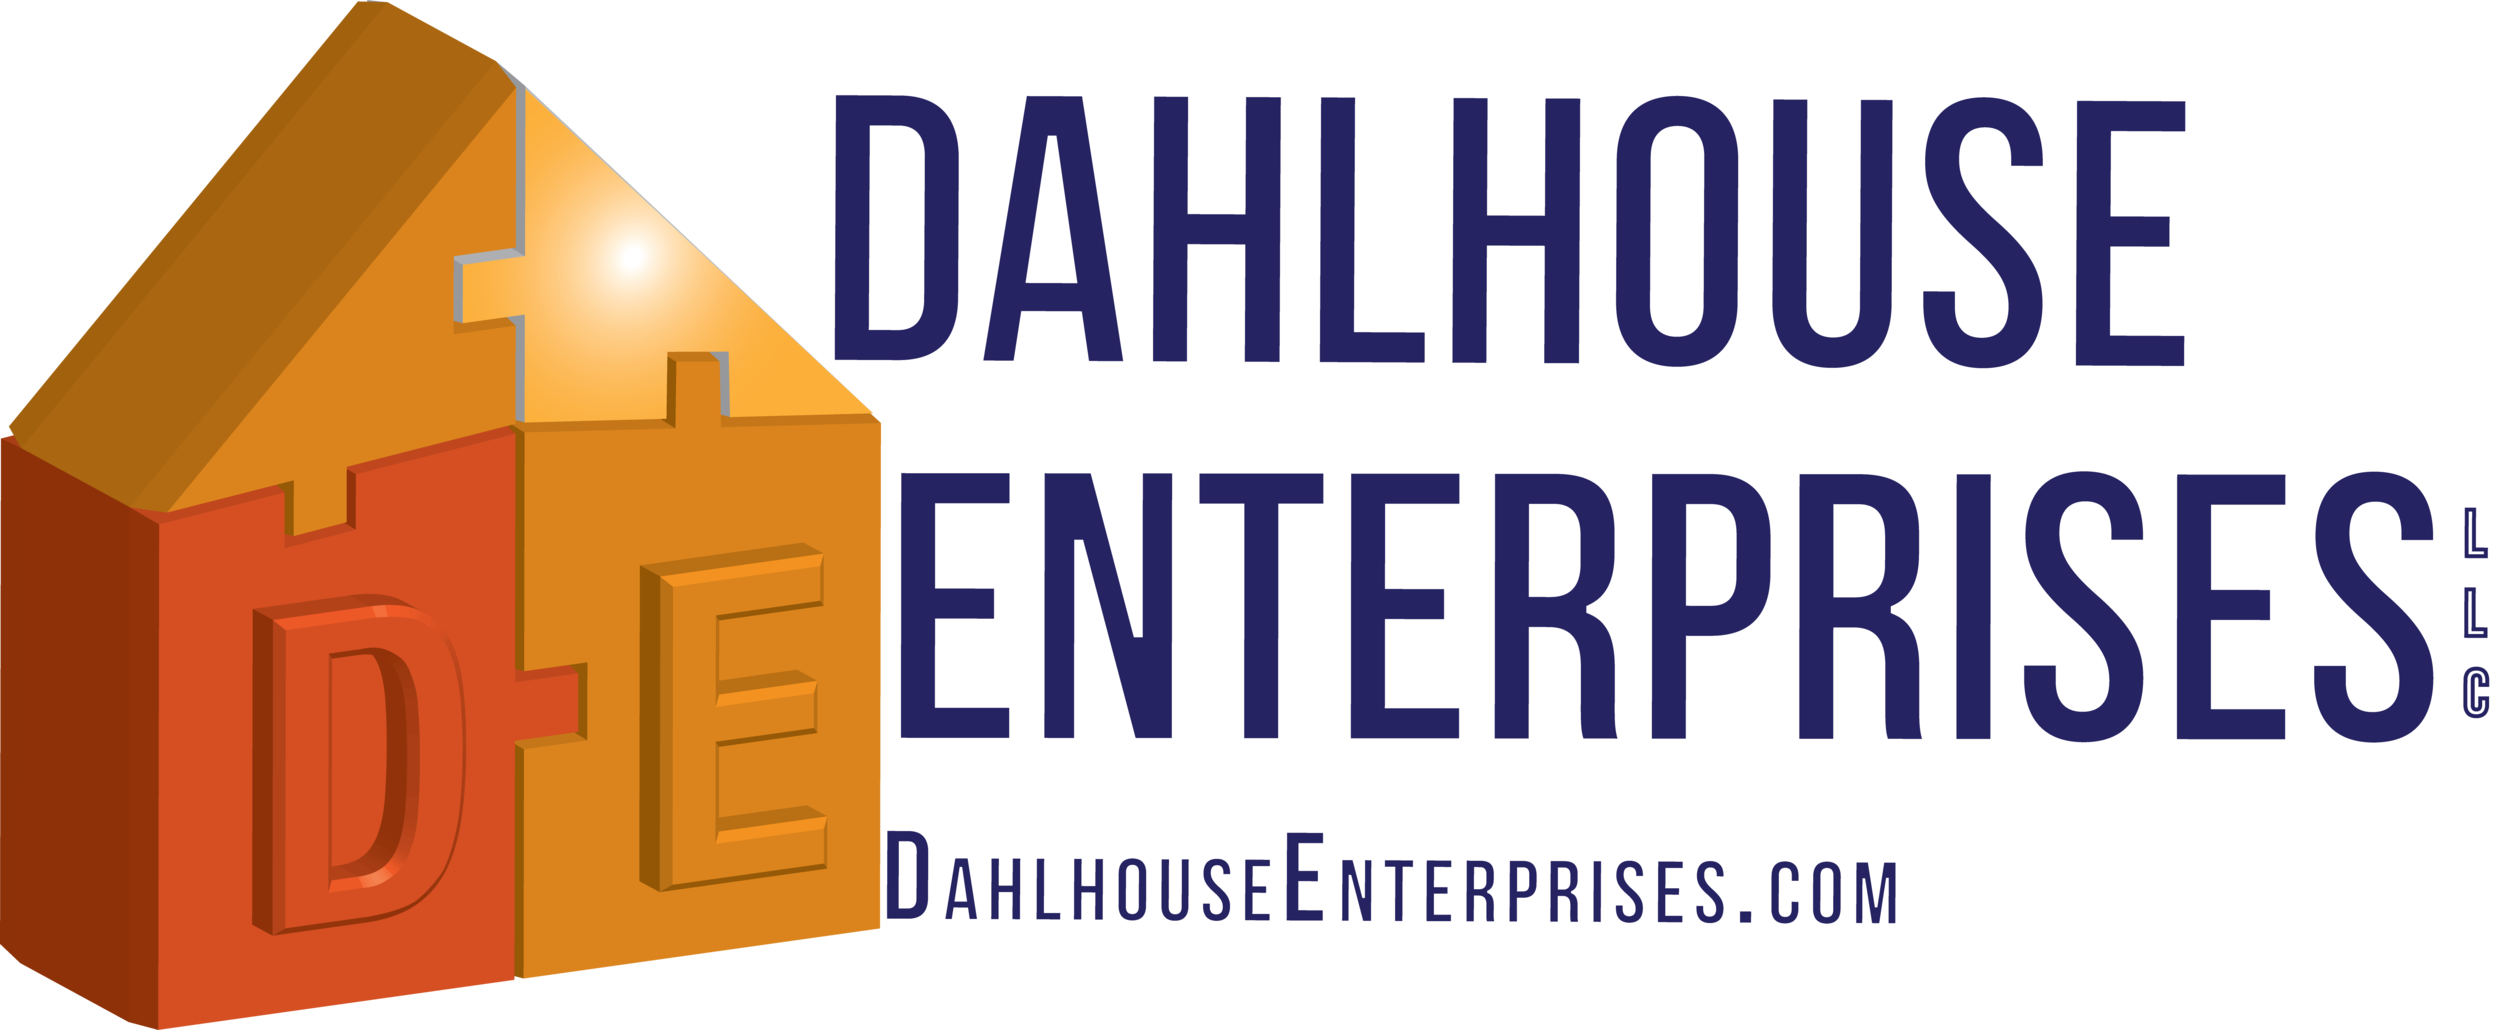 Dahlhouse Logo horiz.png